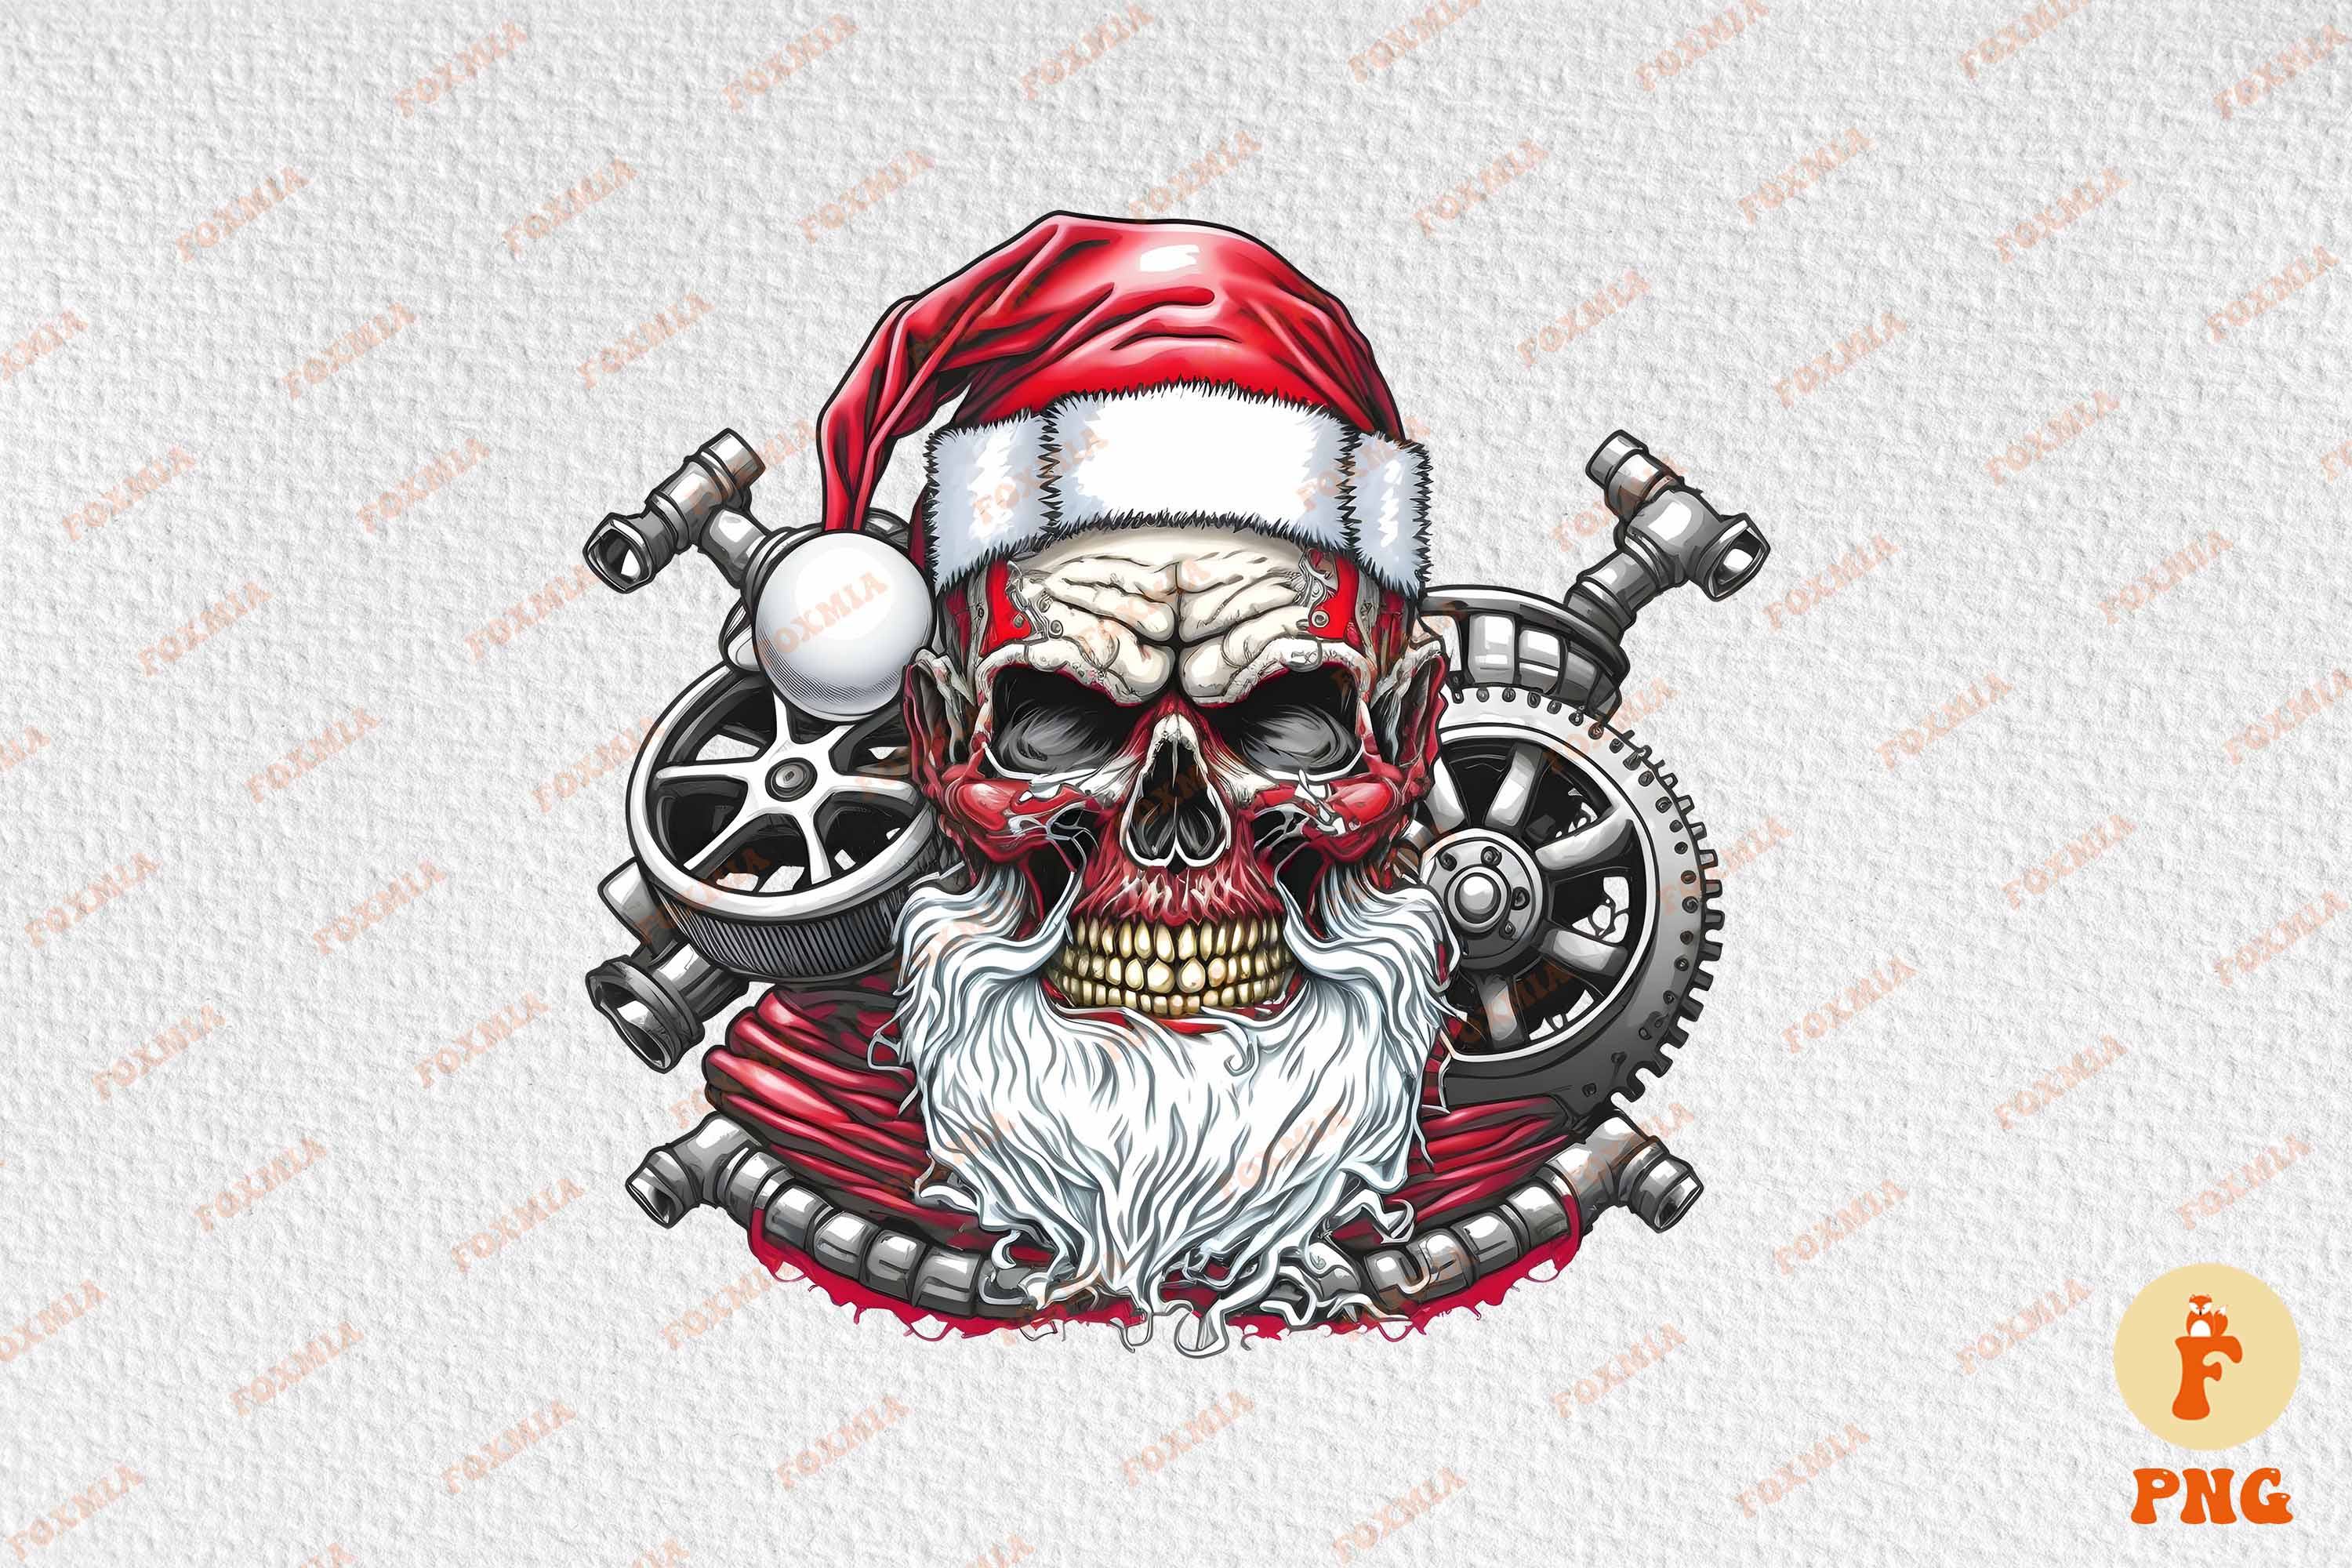 Colorful image of Santa's skull.